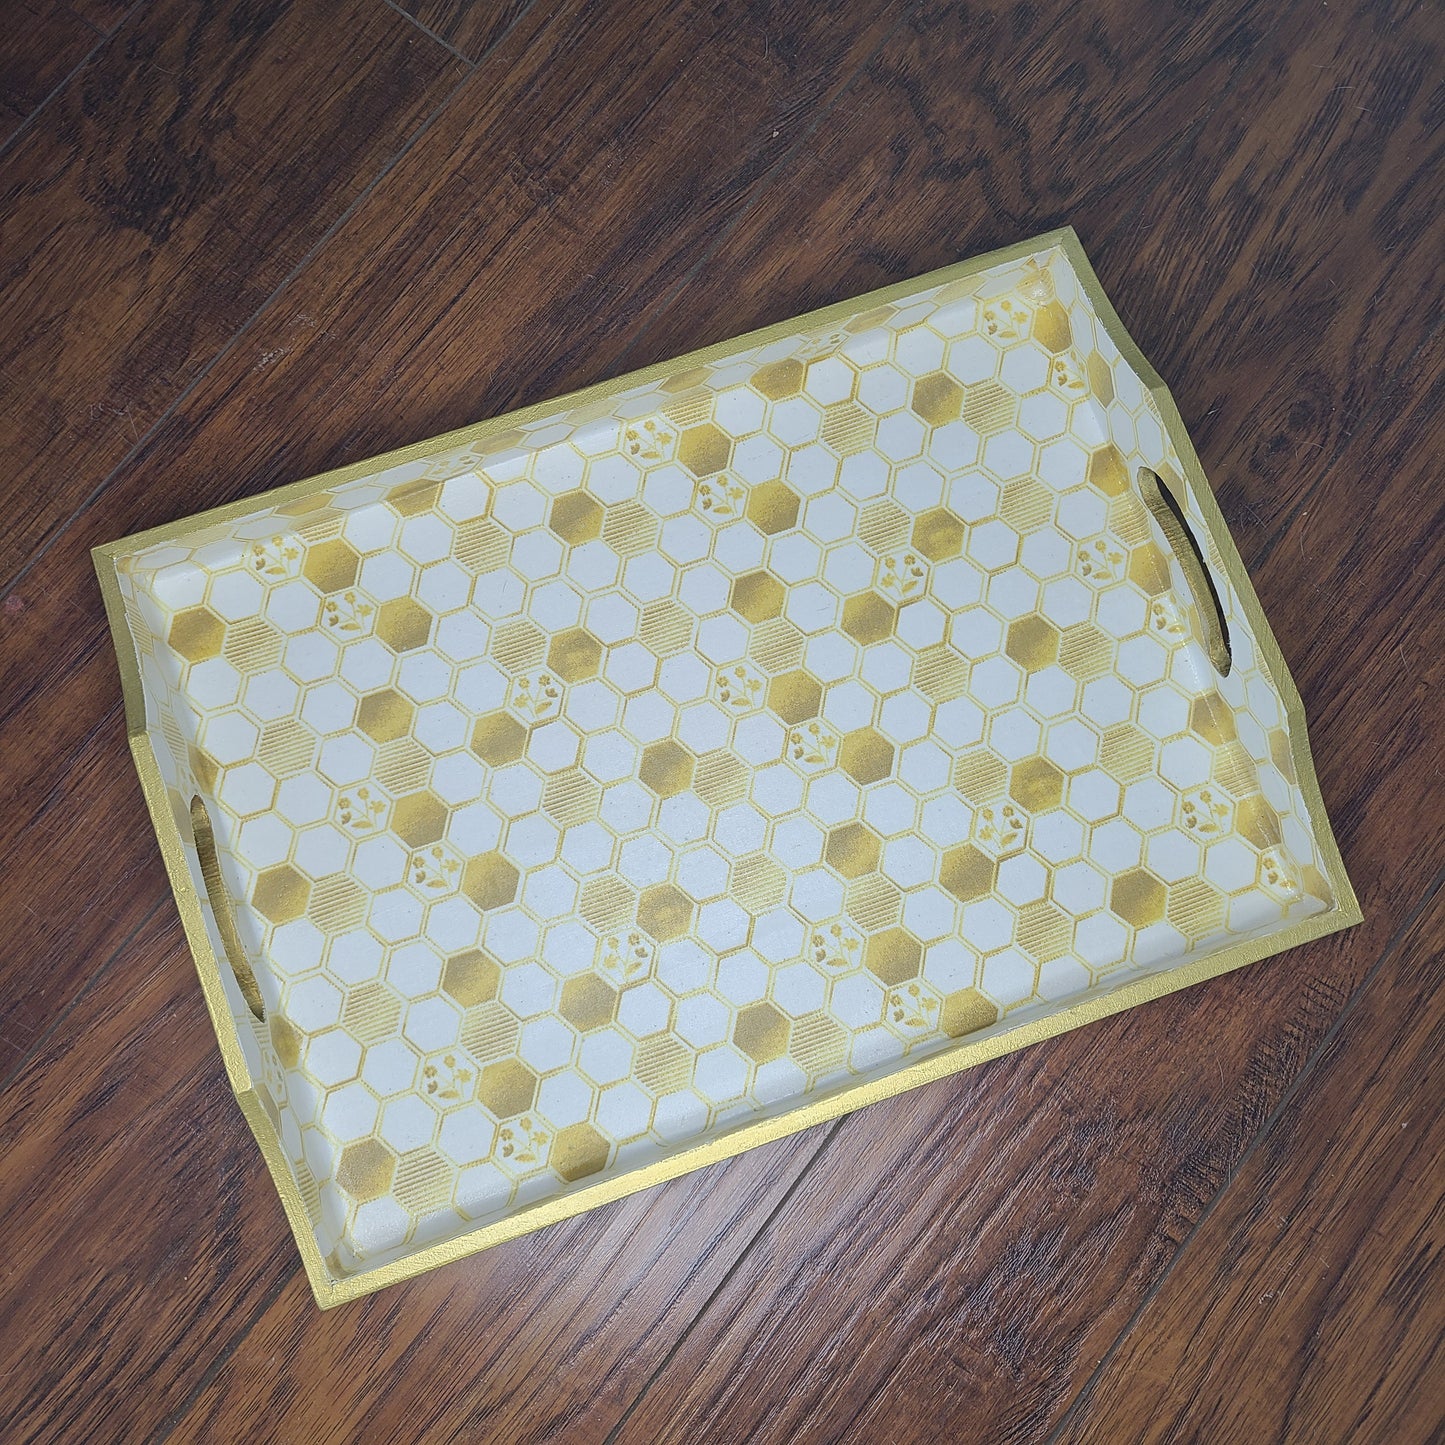 Honeycomb tray